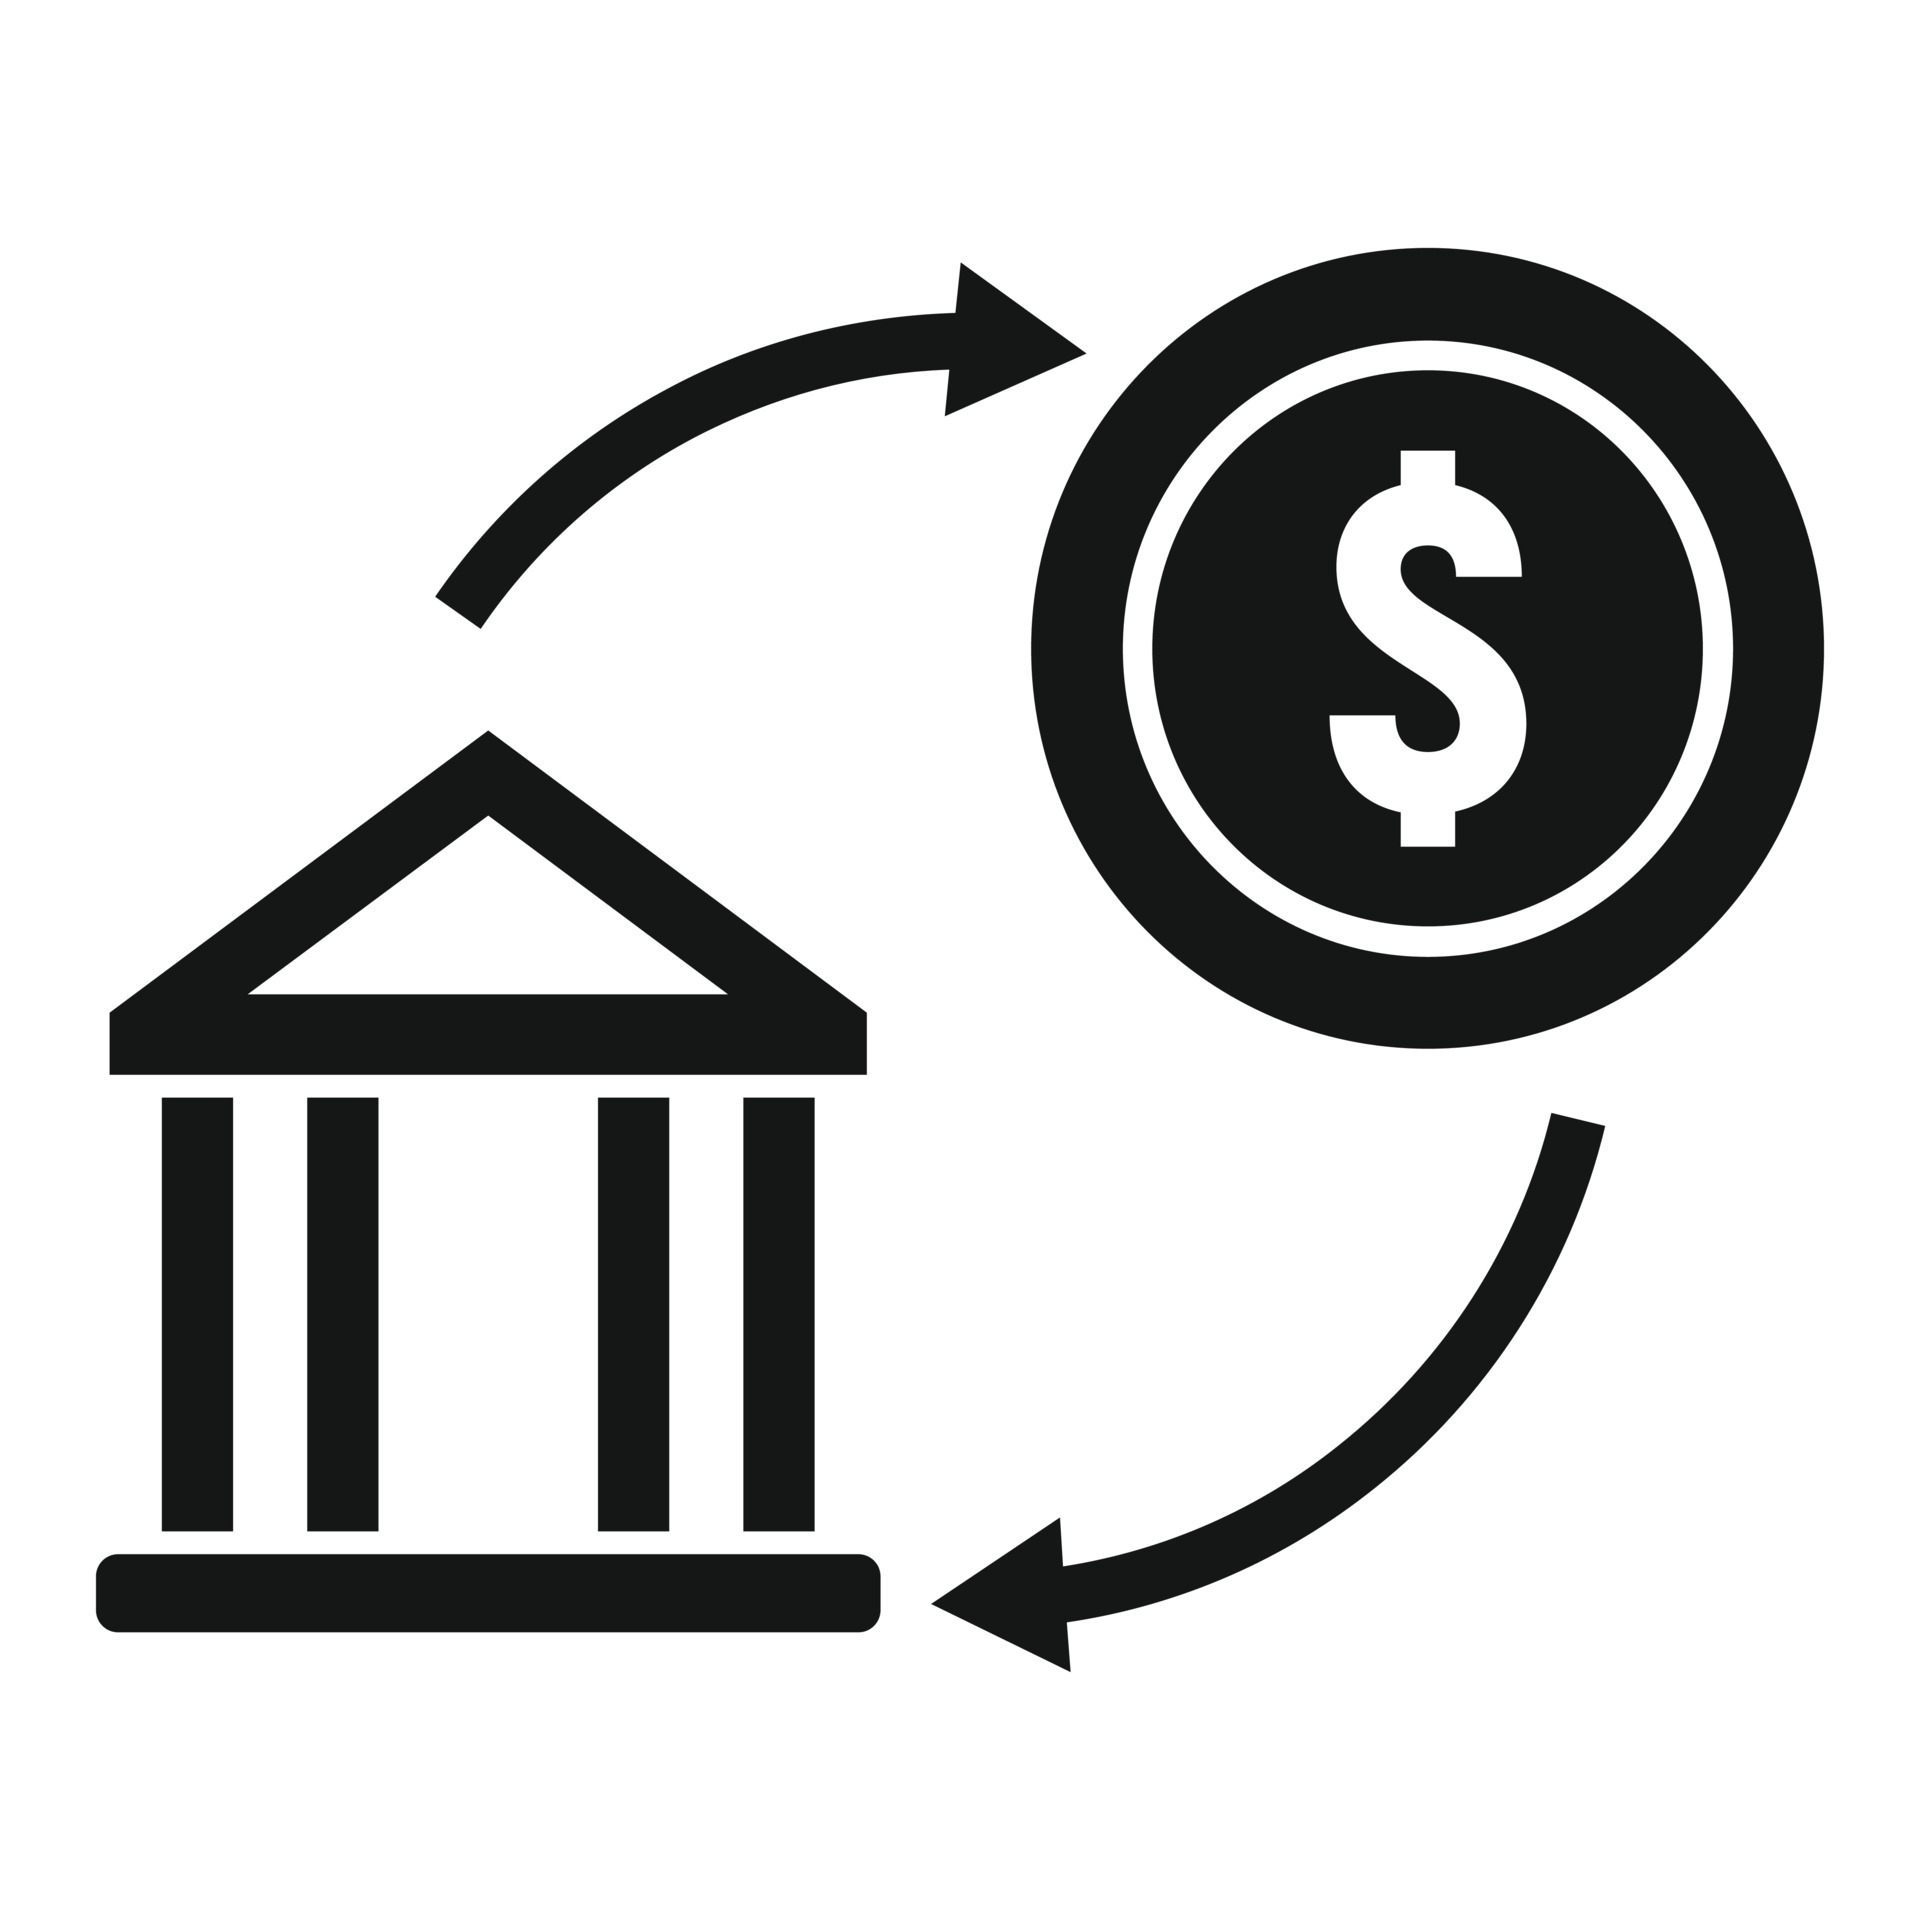 Bank transfer icon simple vector. Money send 15149520 Vector Art at Vecteezy